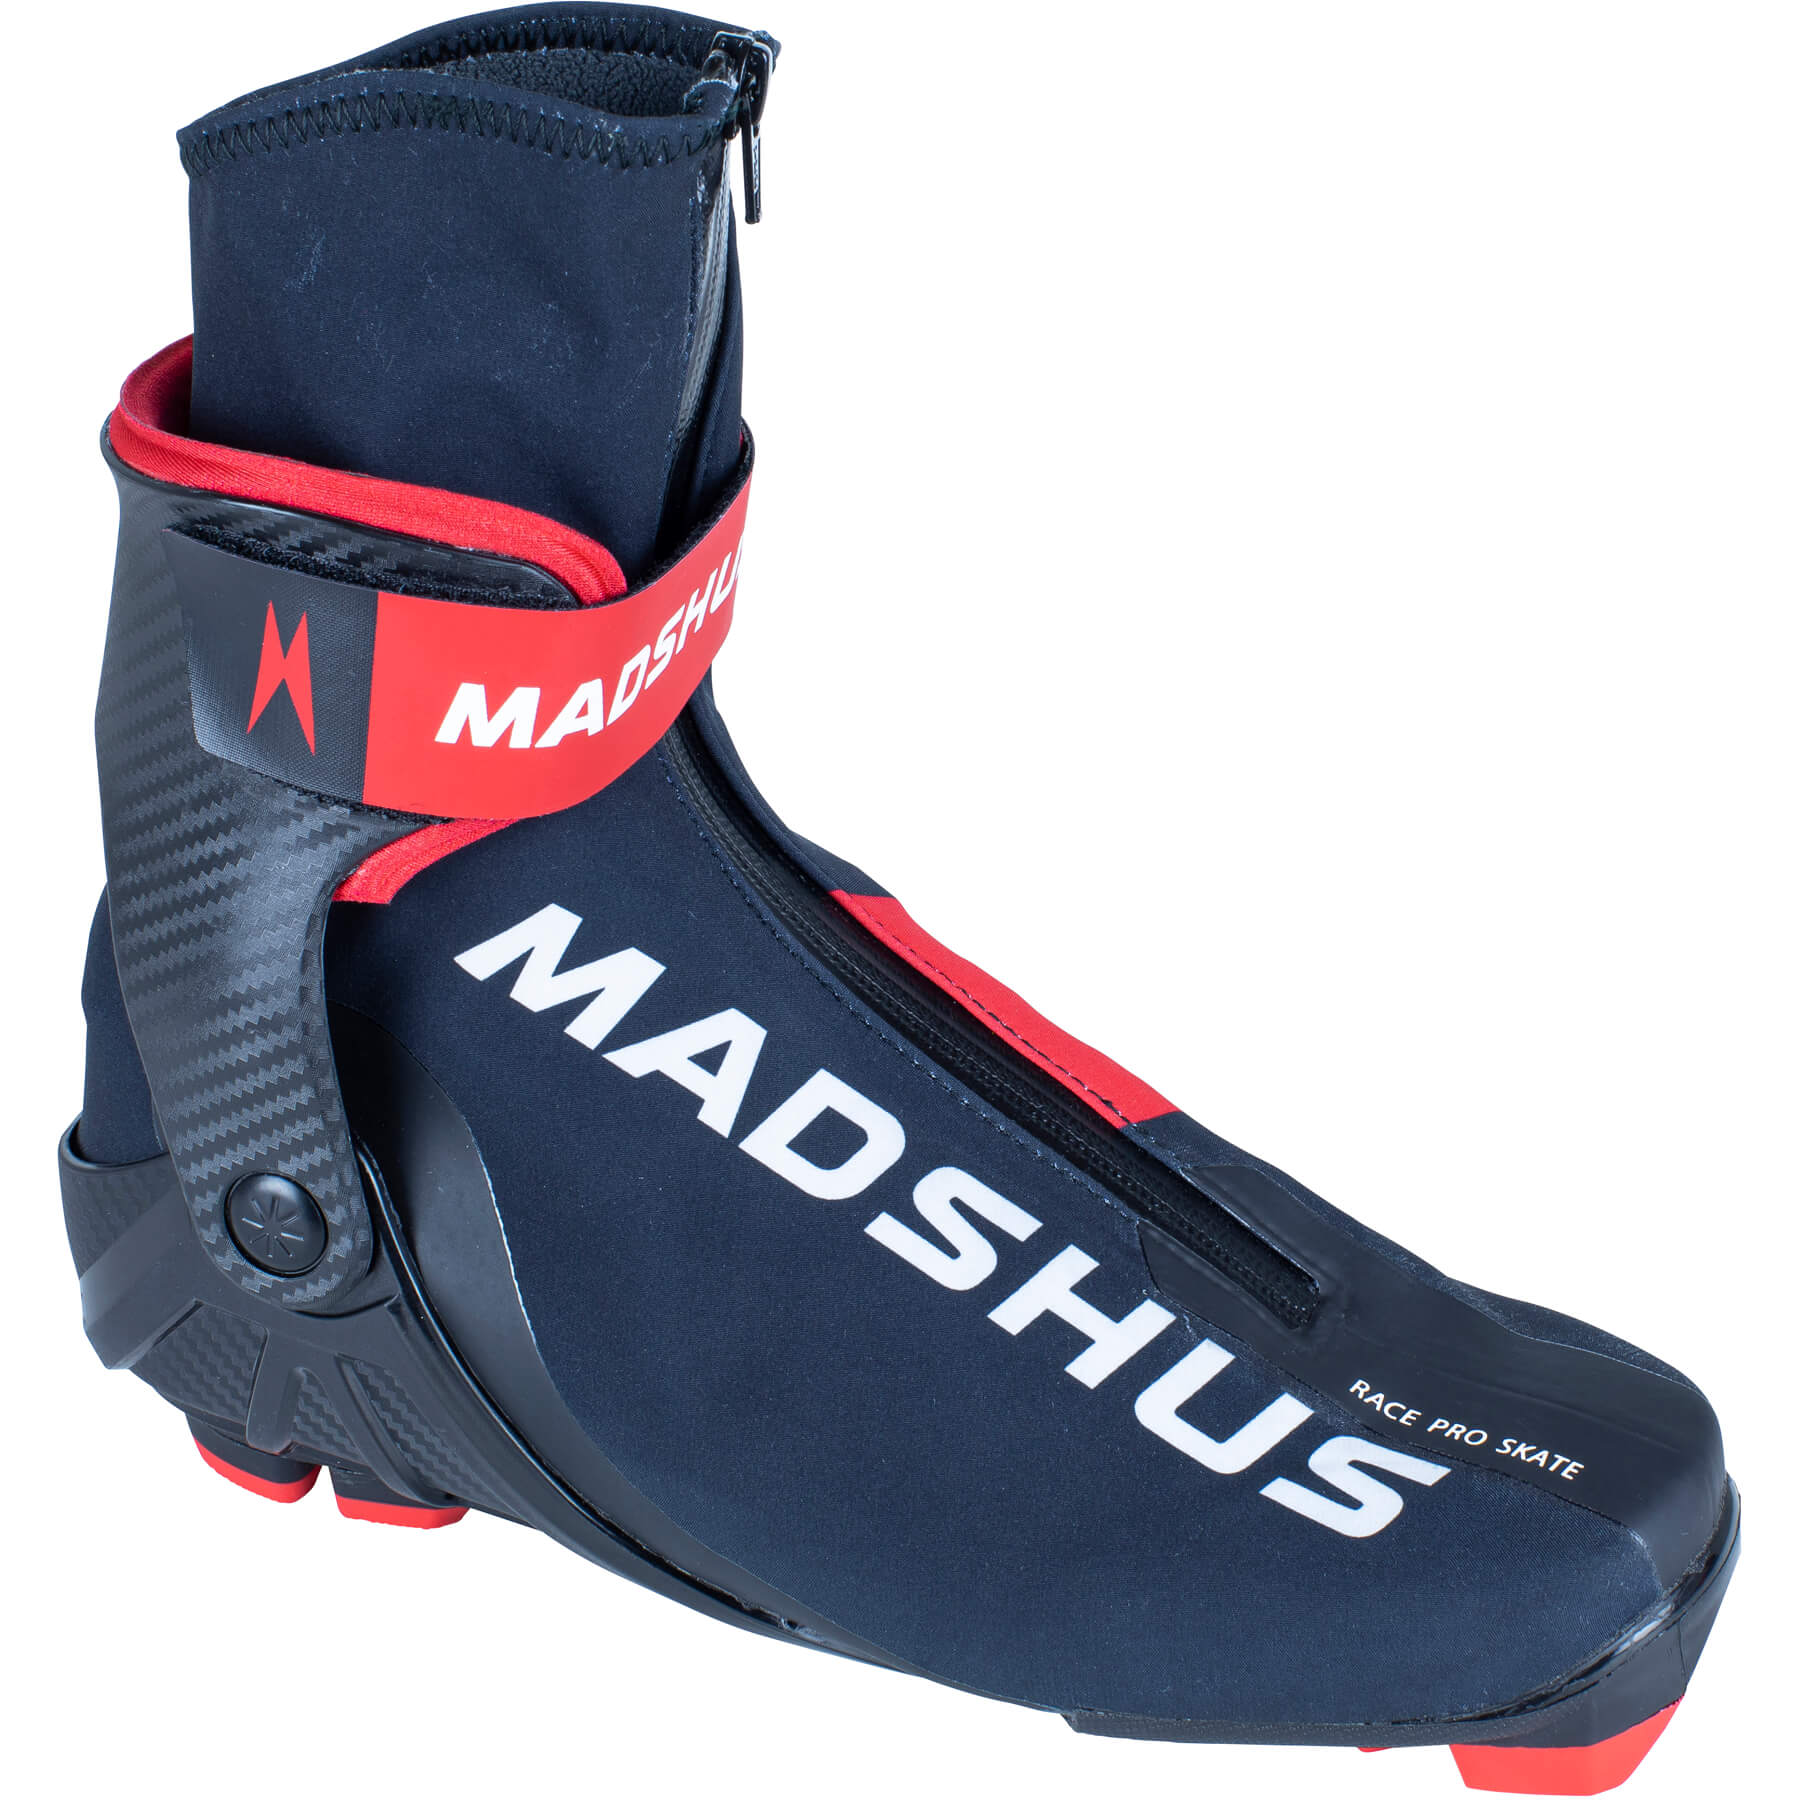 Madshus Race Pro Skate Boot